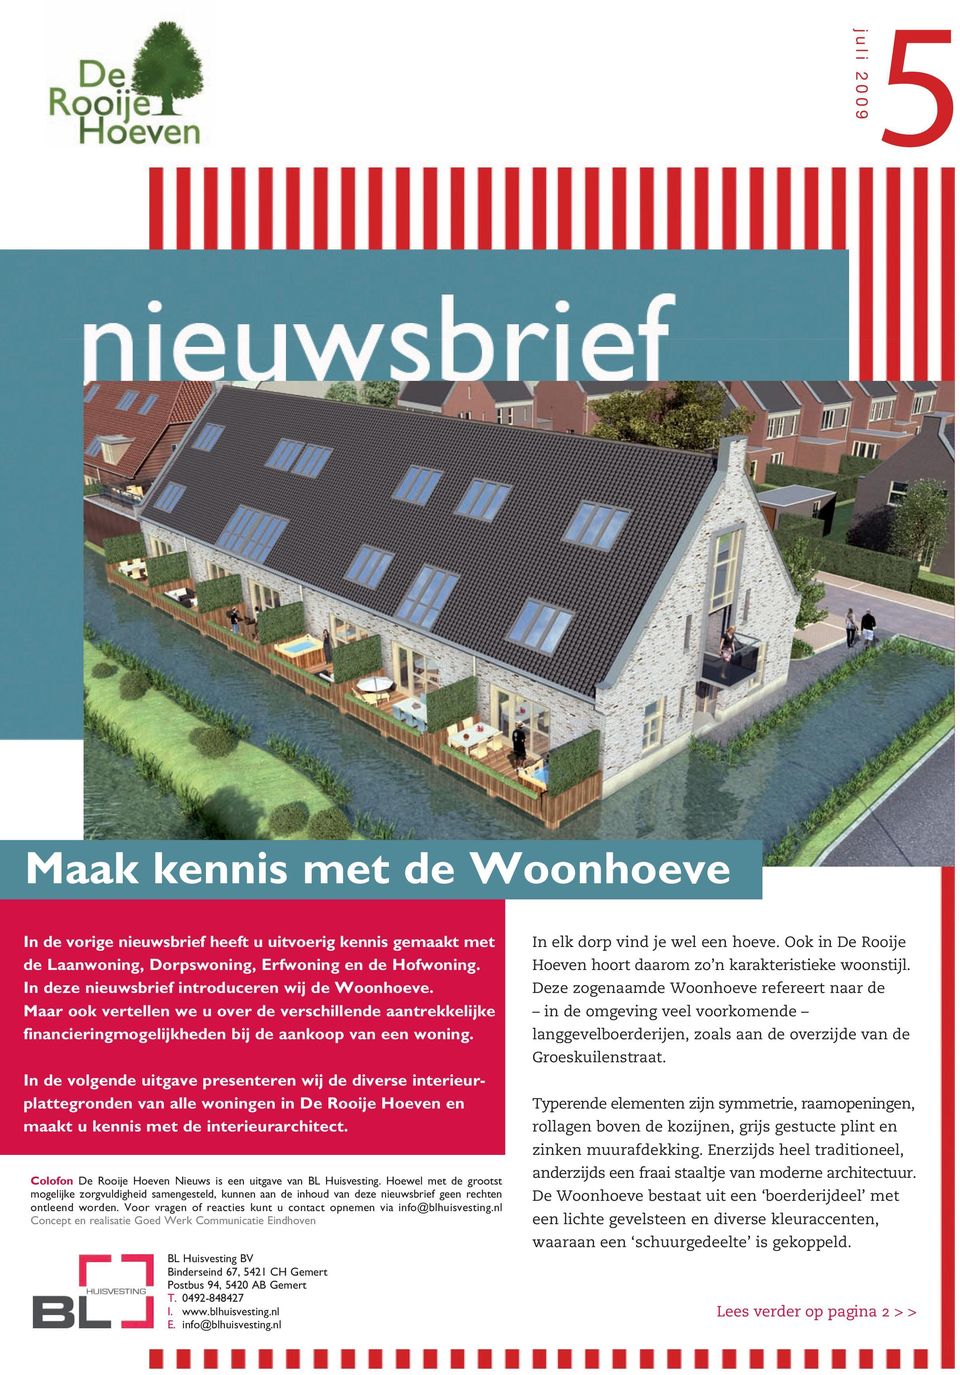 In de volgende uitgave presenteren wij de diverse interieurplattegronden van alle woningen in De Rooije Hoeven en maakt u kennis met de interieurarchitect.